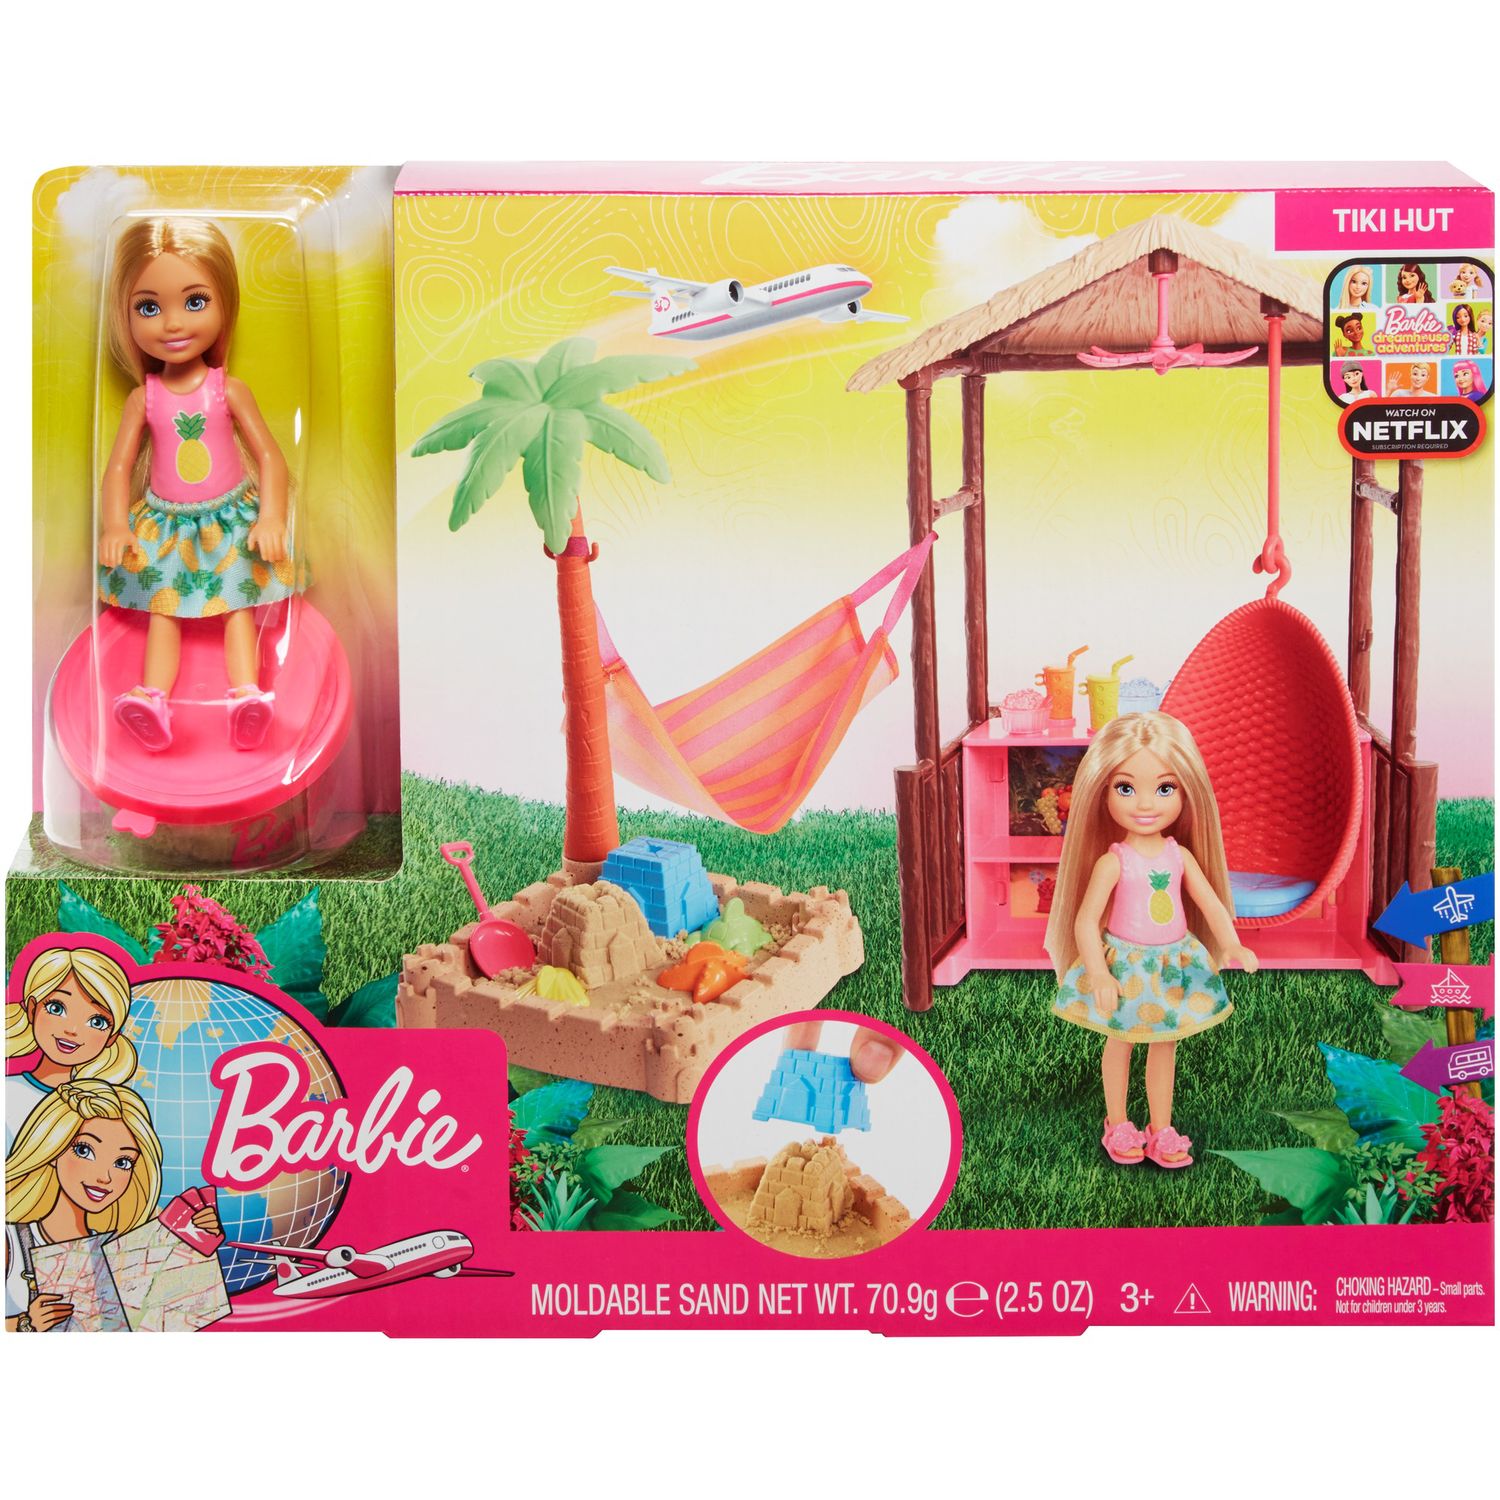 kohls barbie dream house